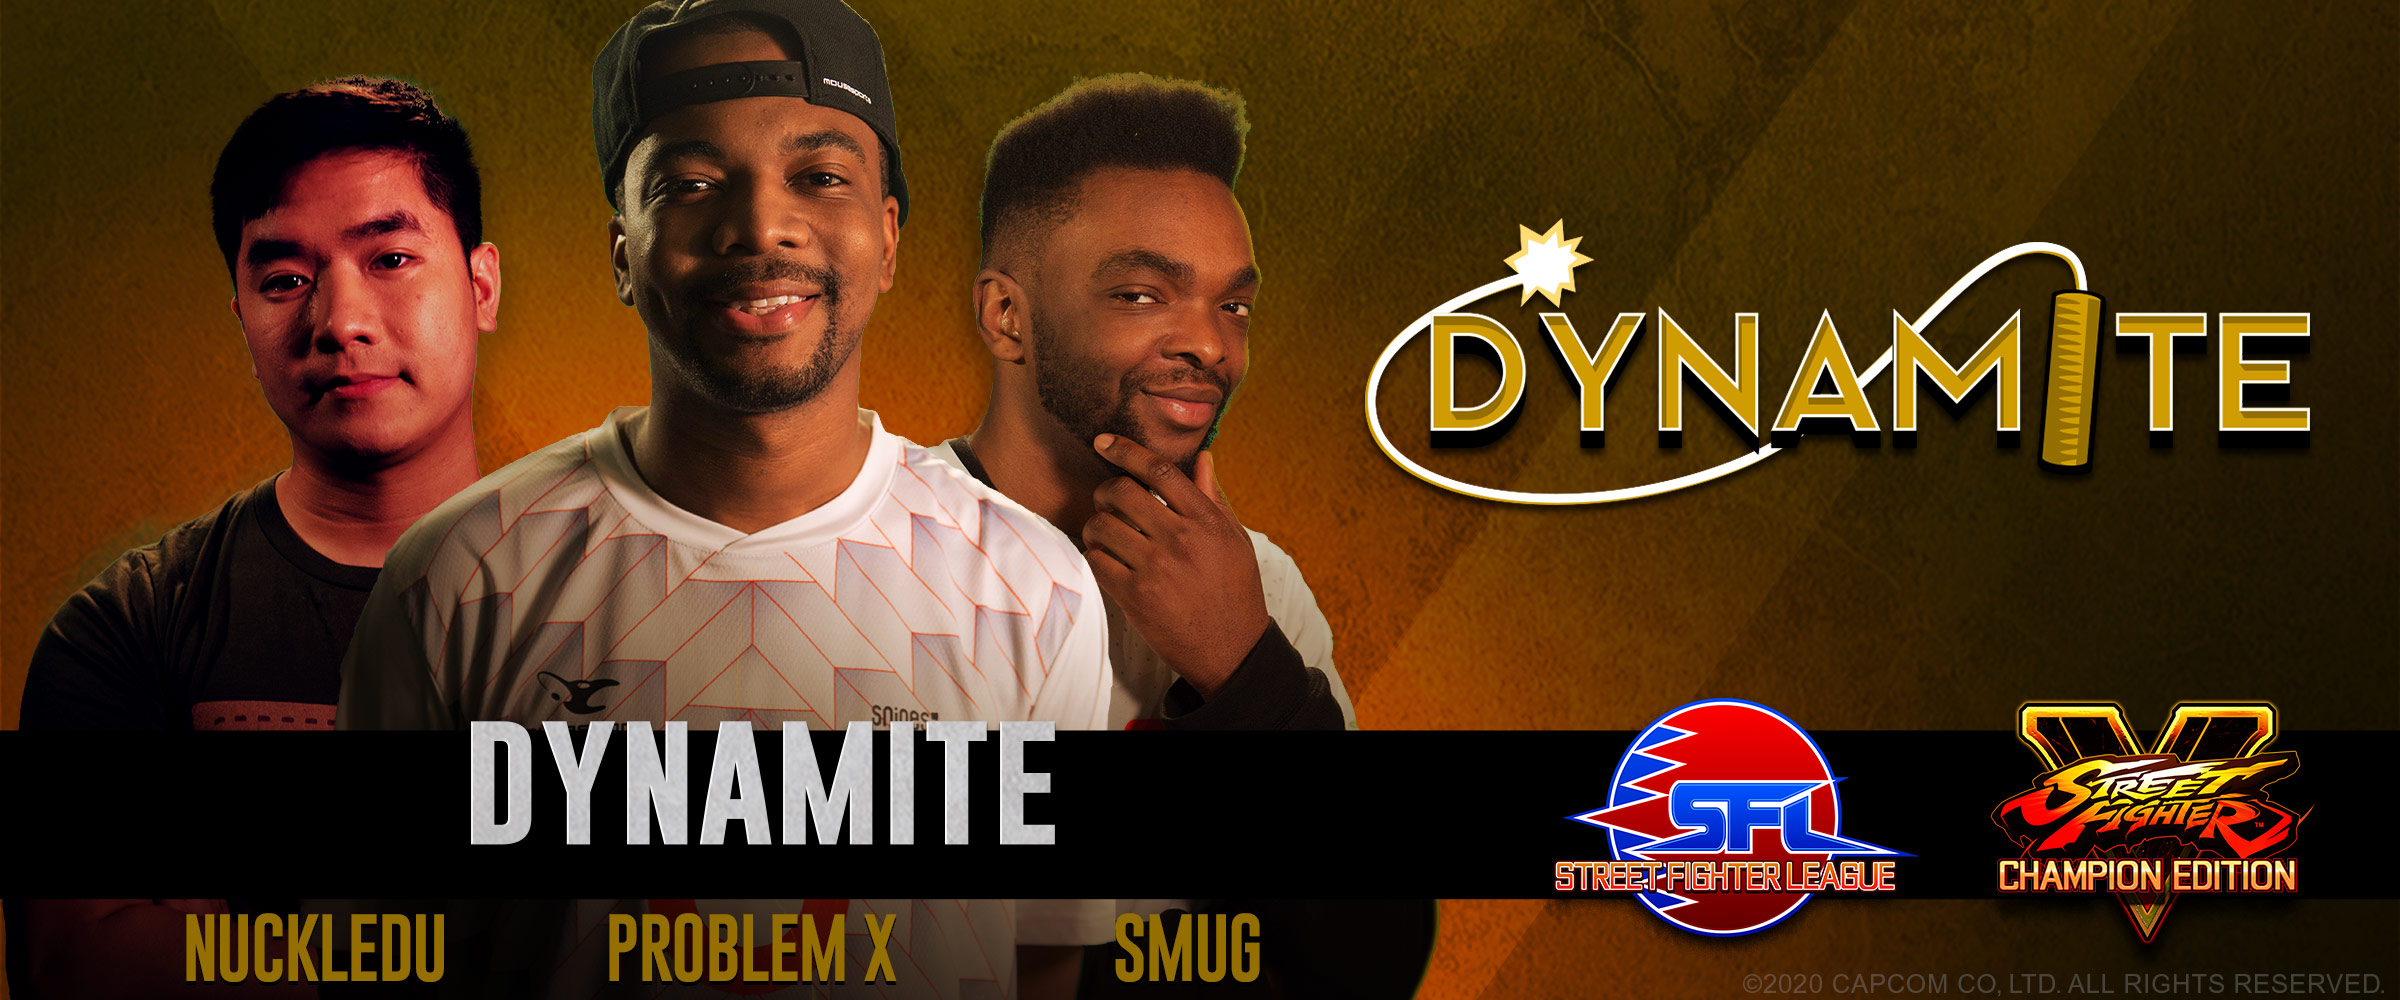 Introducing Team Dynamite